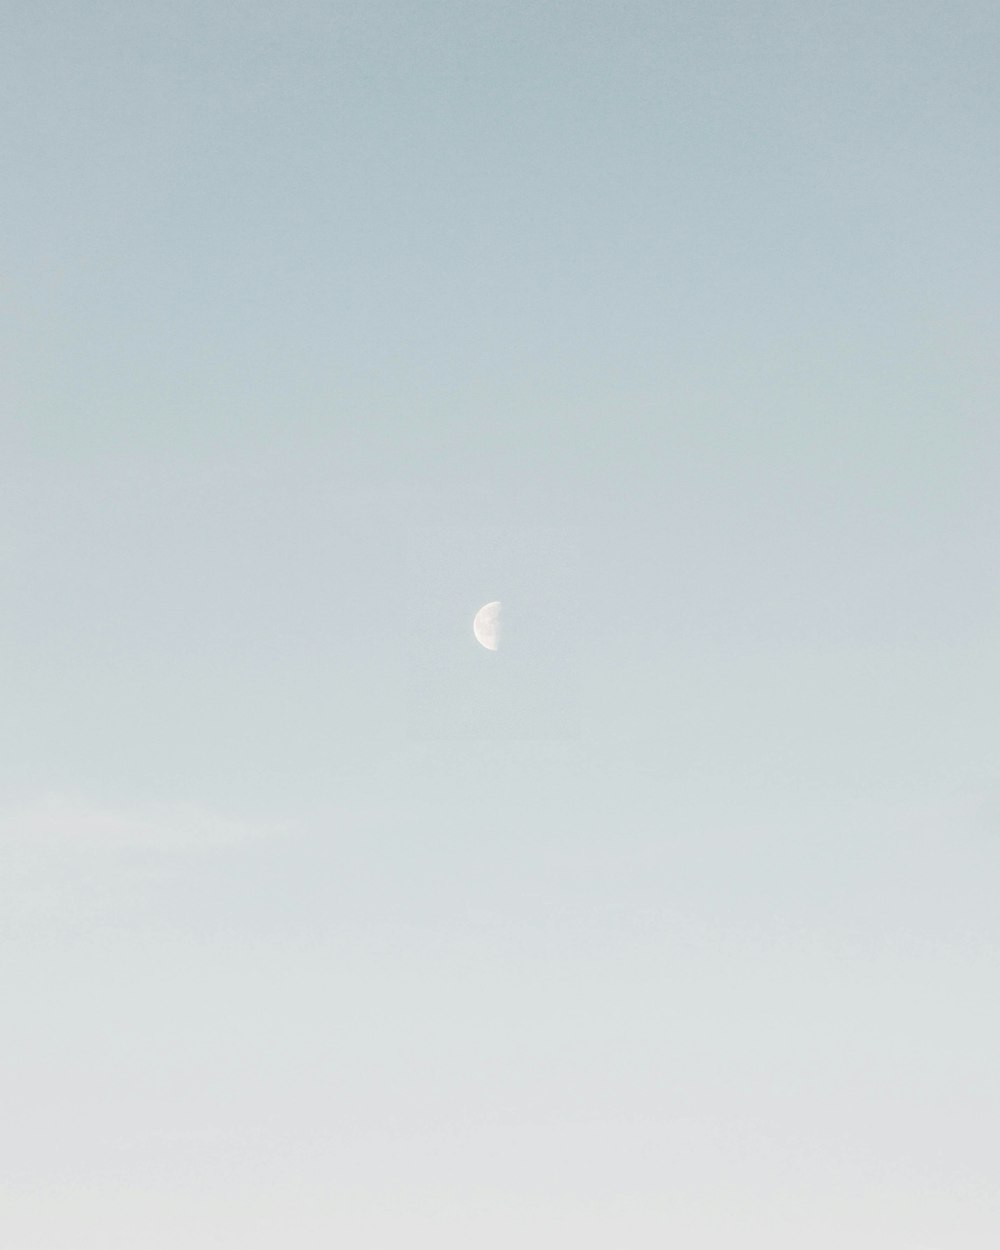 Foto de media luna durante el día